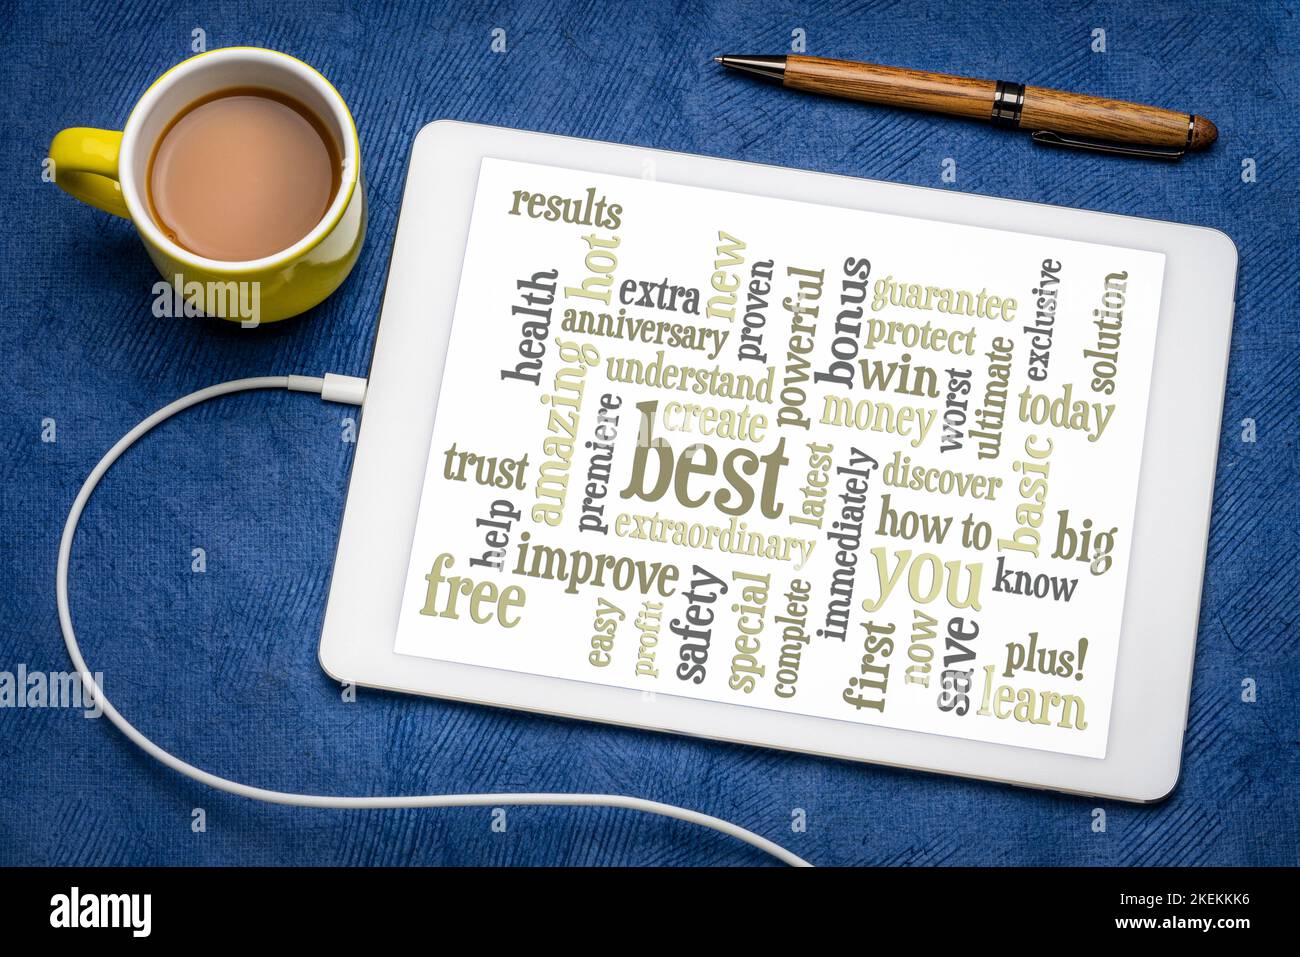 Copywriting Power words - Wortwolke auf einem digitalen Tablet, flach liegend mit einer Tasse Kaffee, Marketing und Kommunikationskonzept Stockfoto